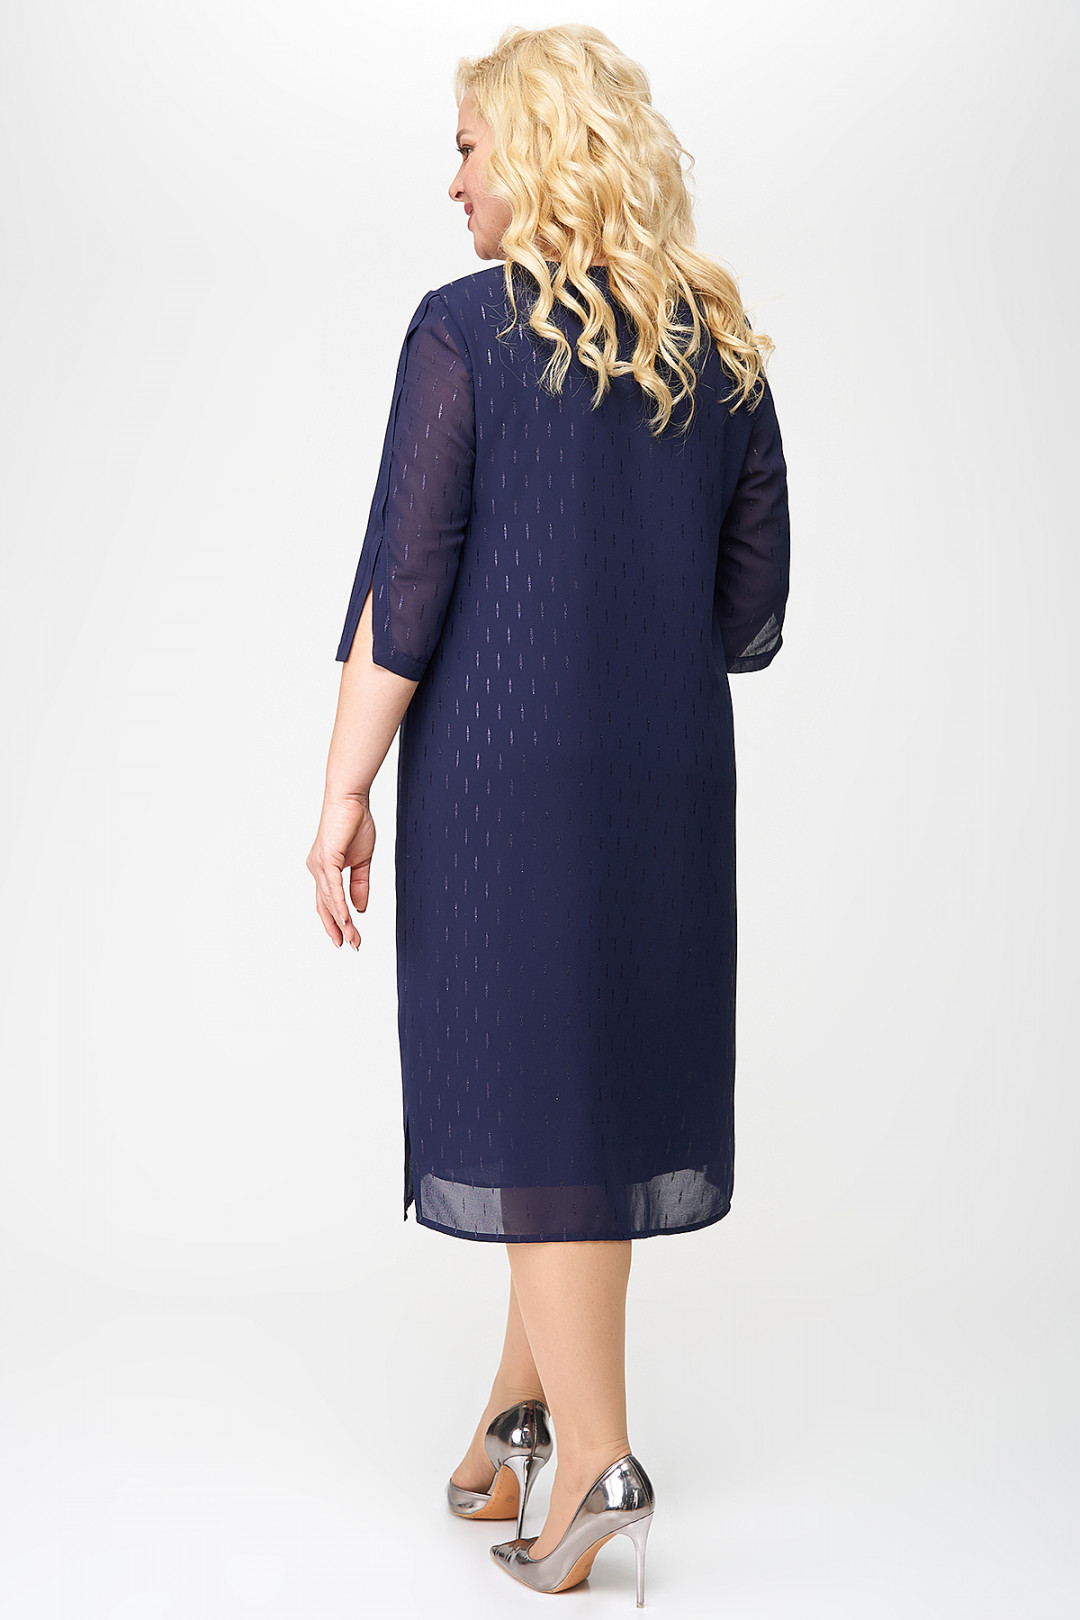 Платье ALGRANDA (Новелла Шарм) A3848-5-1